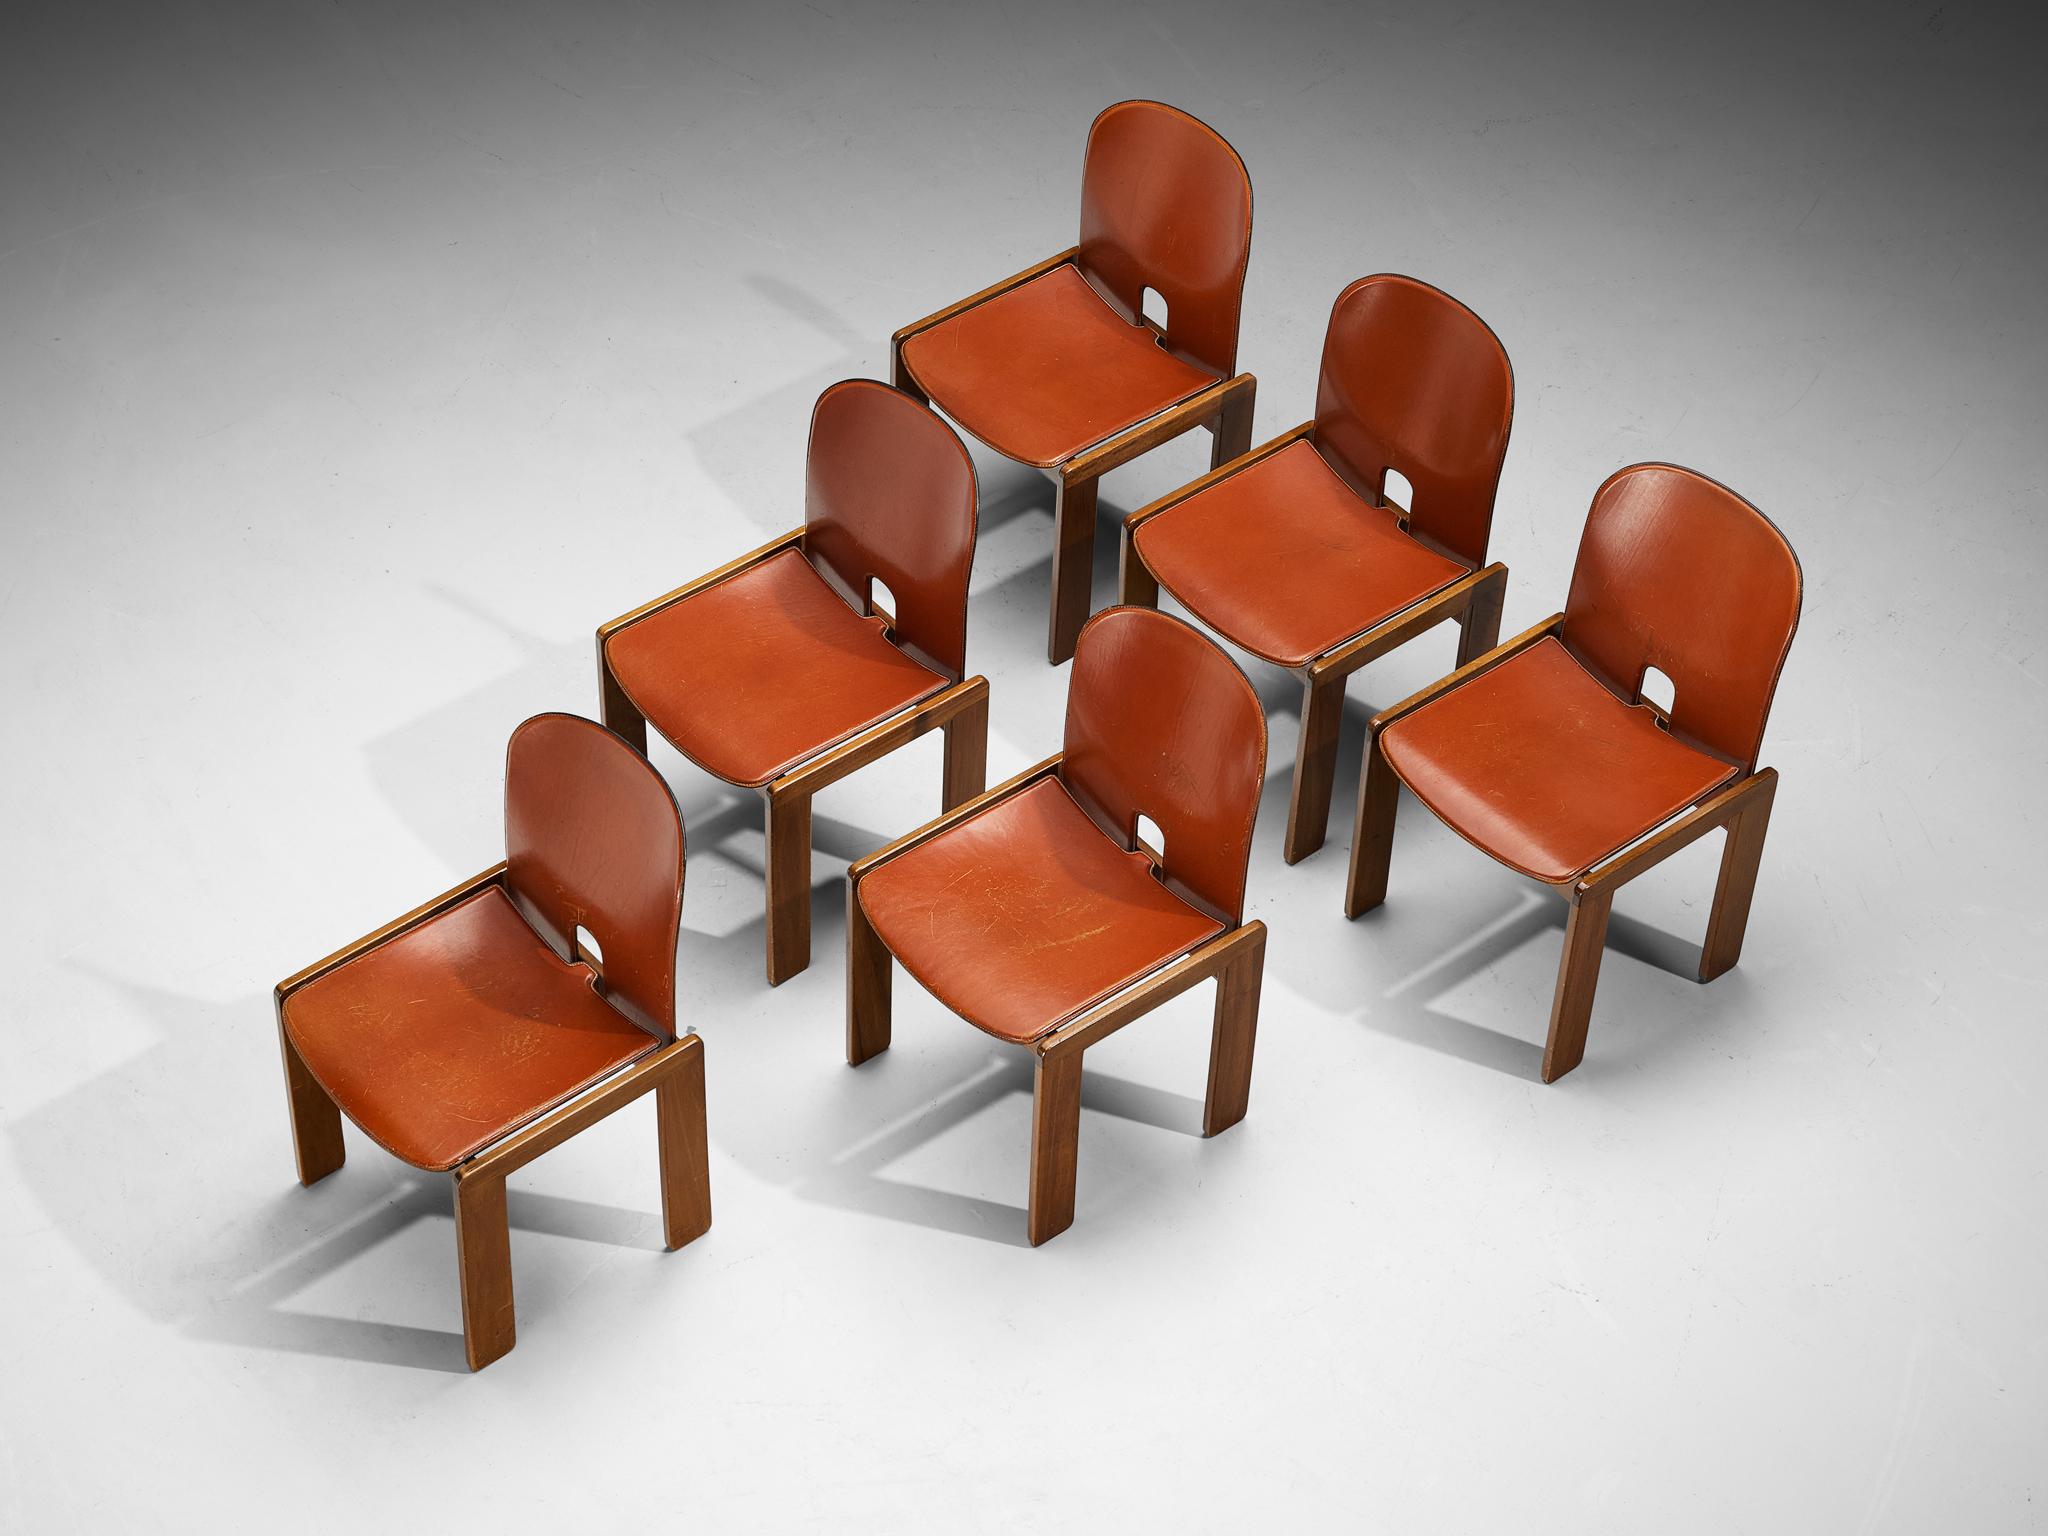 Afra & Tobia Scarpa für Cassina, Satz von sechs Esszimmerstühlen Modell '121', Nussbaum, cognacfarbenes Leder, Italien, Entwurf 1965

Set aus sechs Esszimmerstühlen des italienischen Designerpaars Tobia und Afra Scarpa. Diese Stühle haben ein